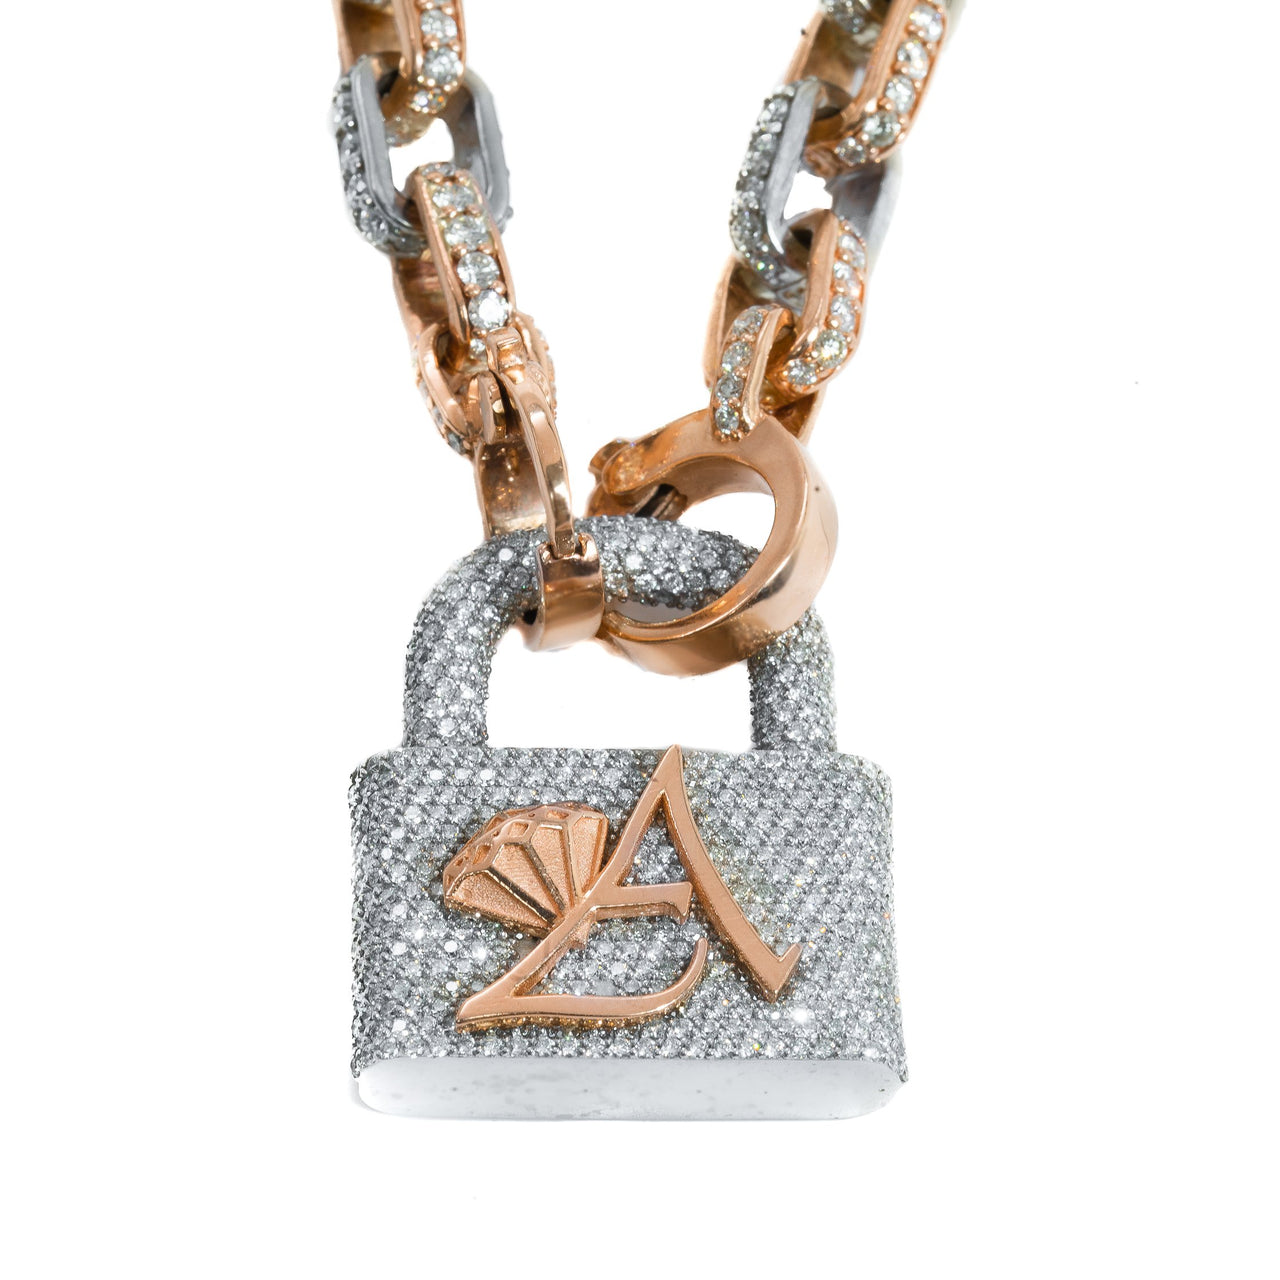 Louis Vuitton Lock Chain Necklace - Gem